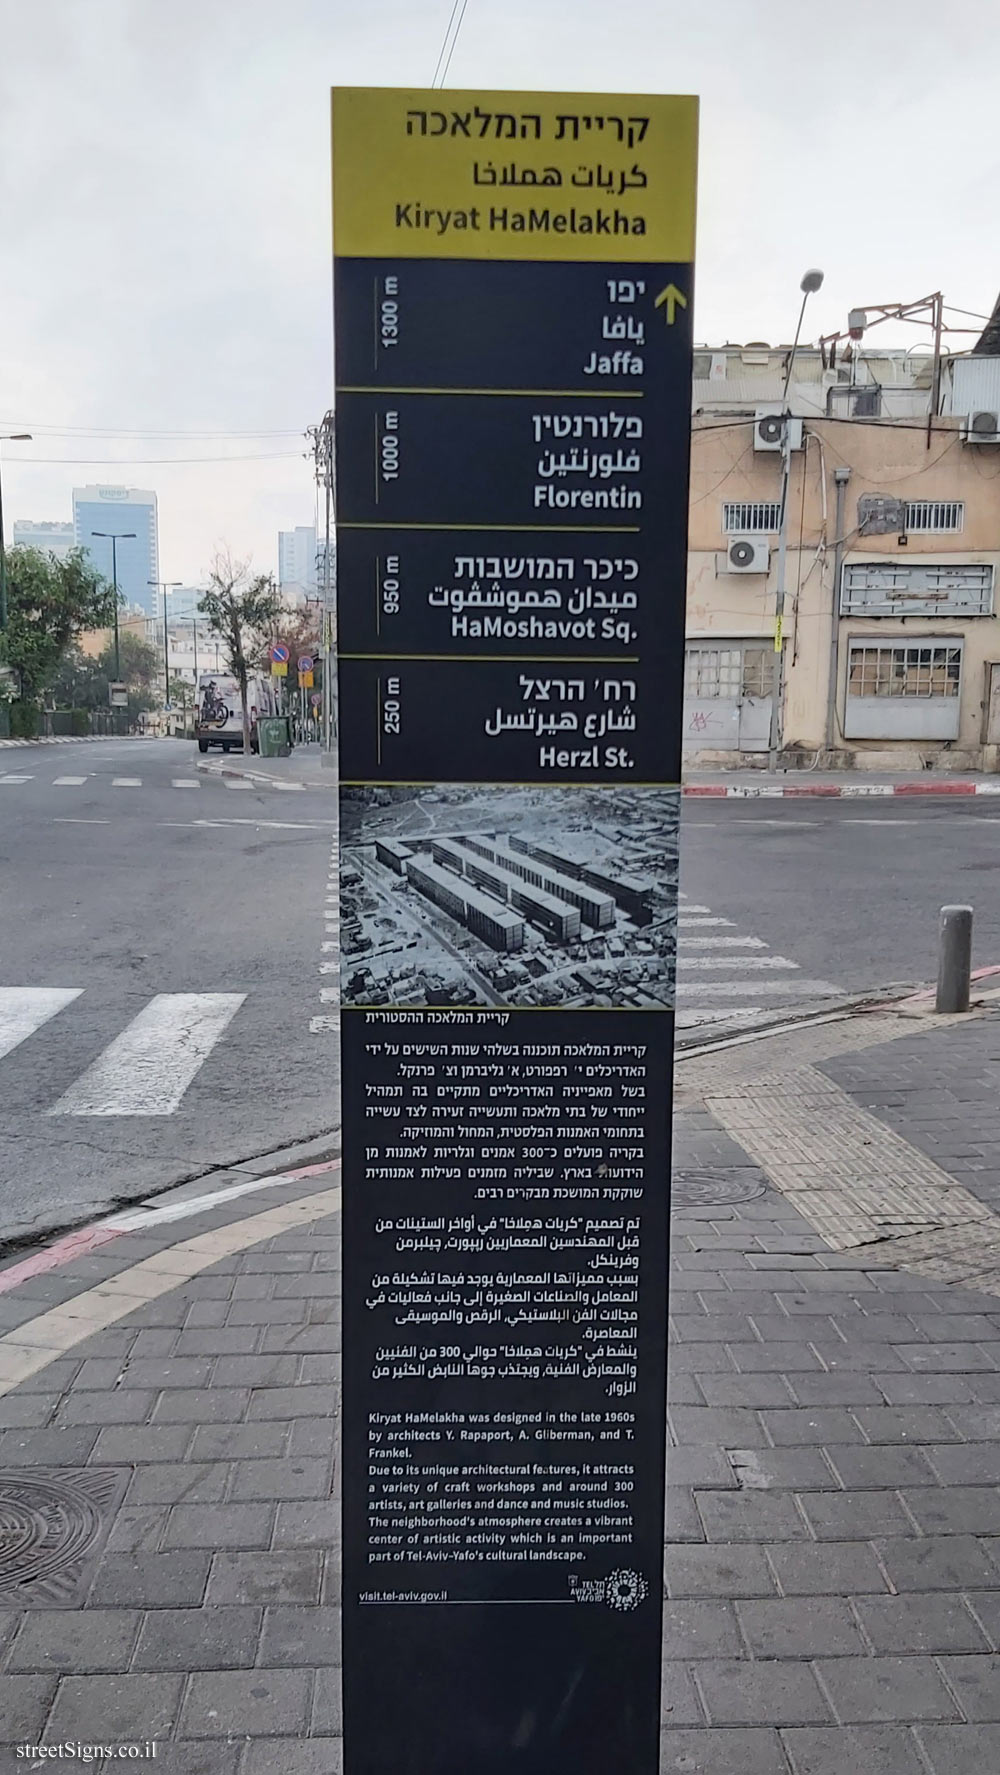 Tel Aviv - Kiryat HaMelakha